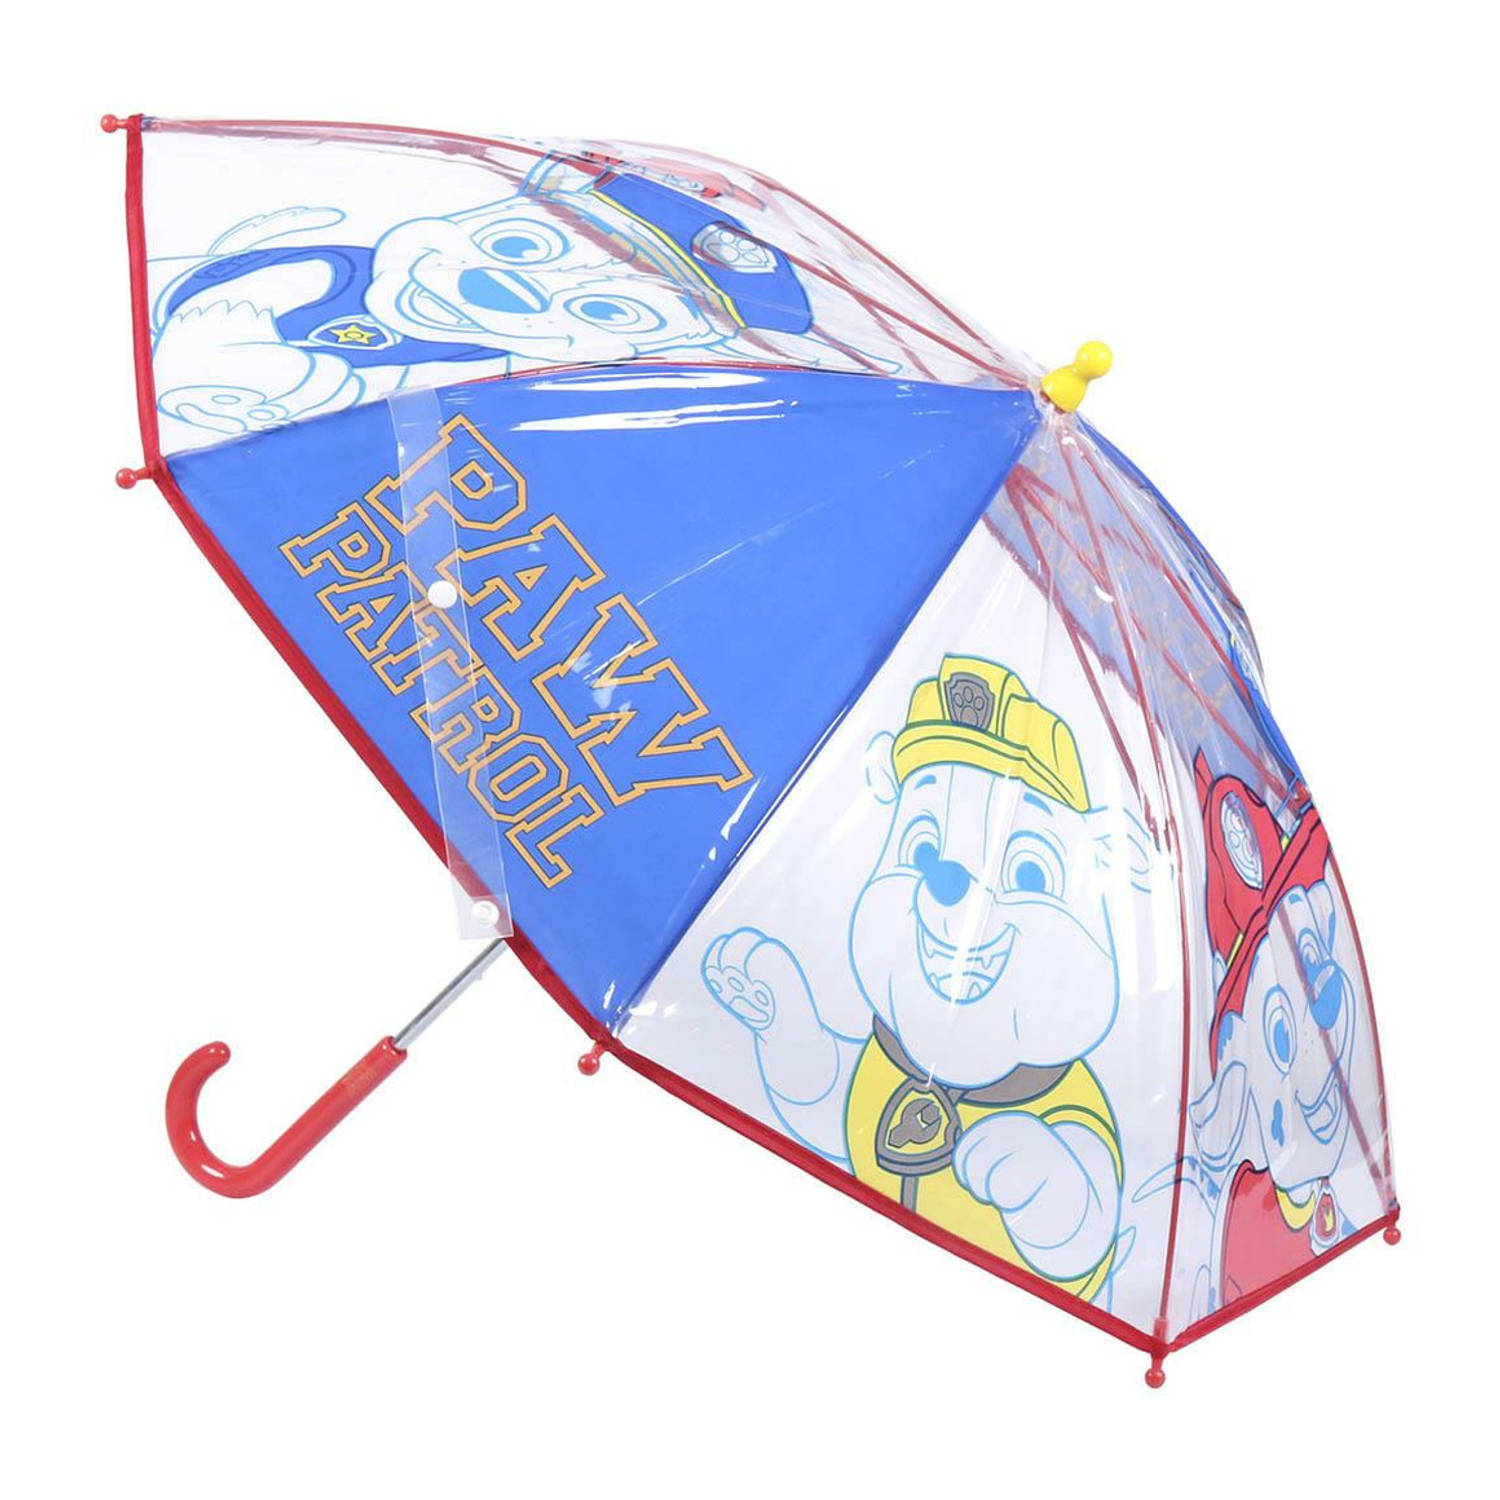 Paw Patrol Paraplu - kinder paraplu - school - regen - leuk - 42 centimeter